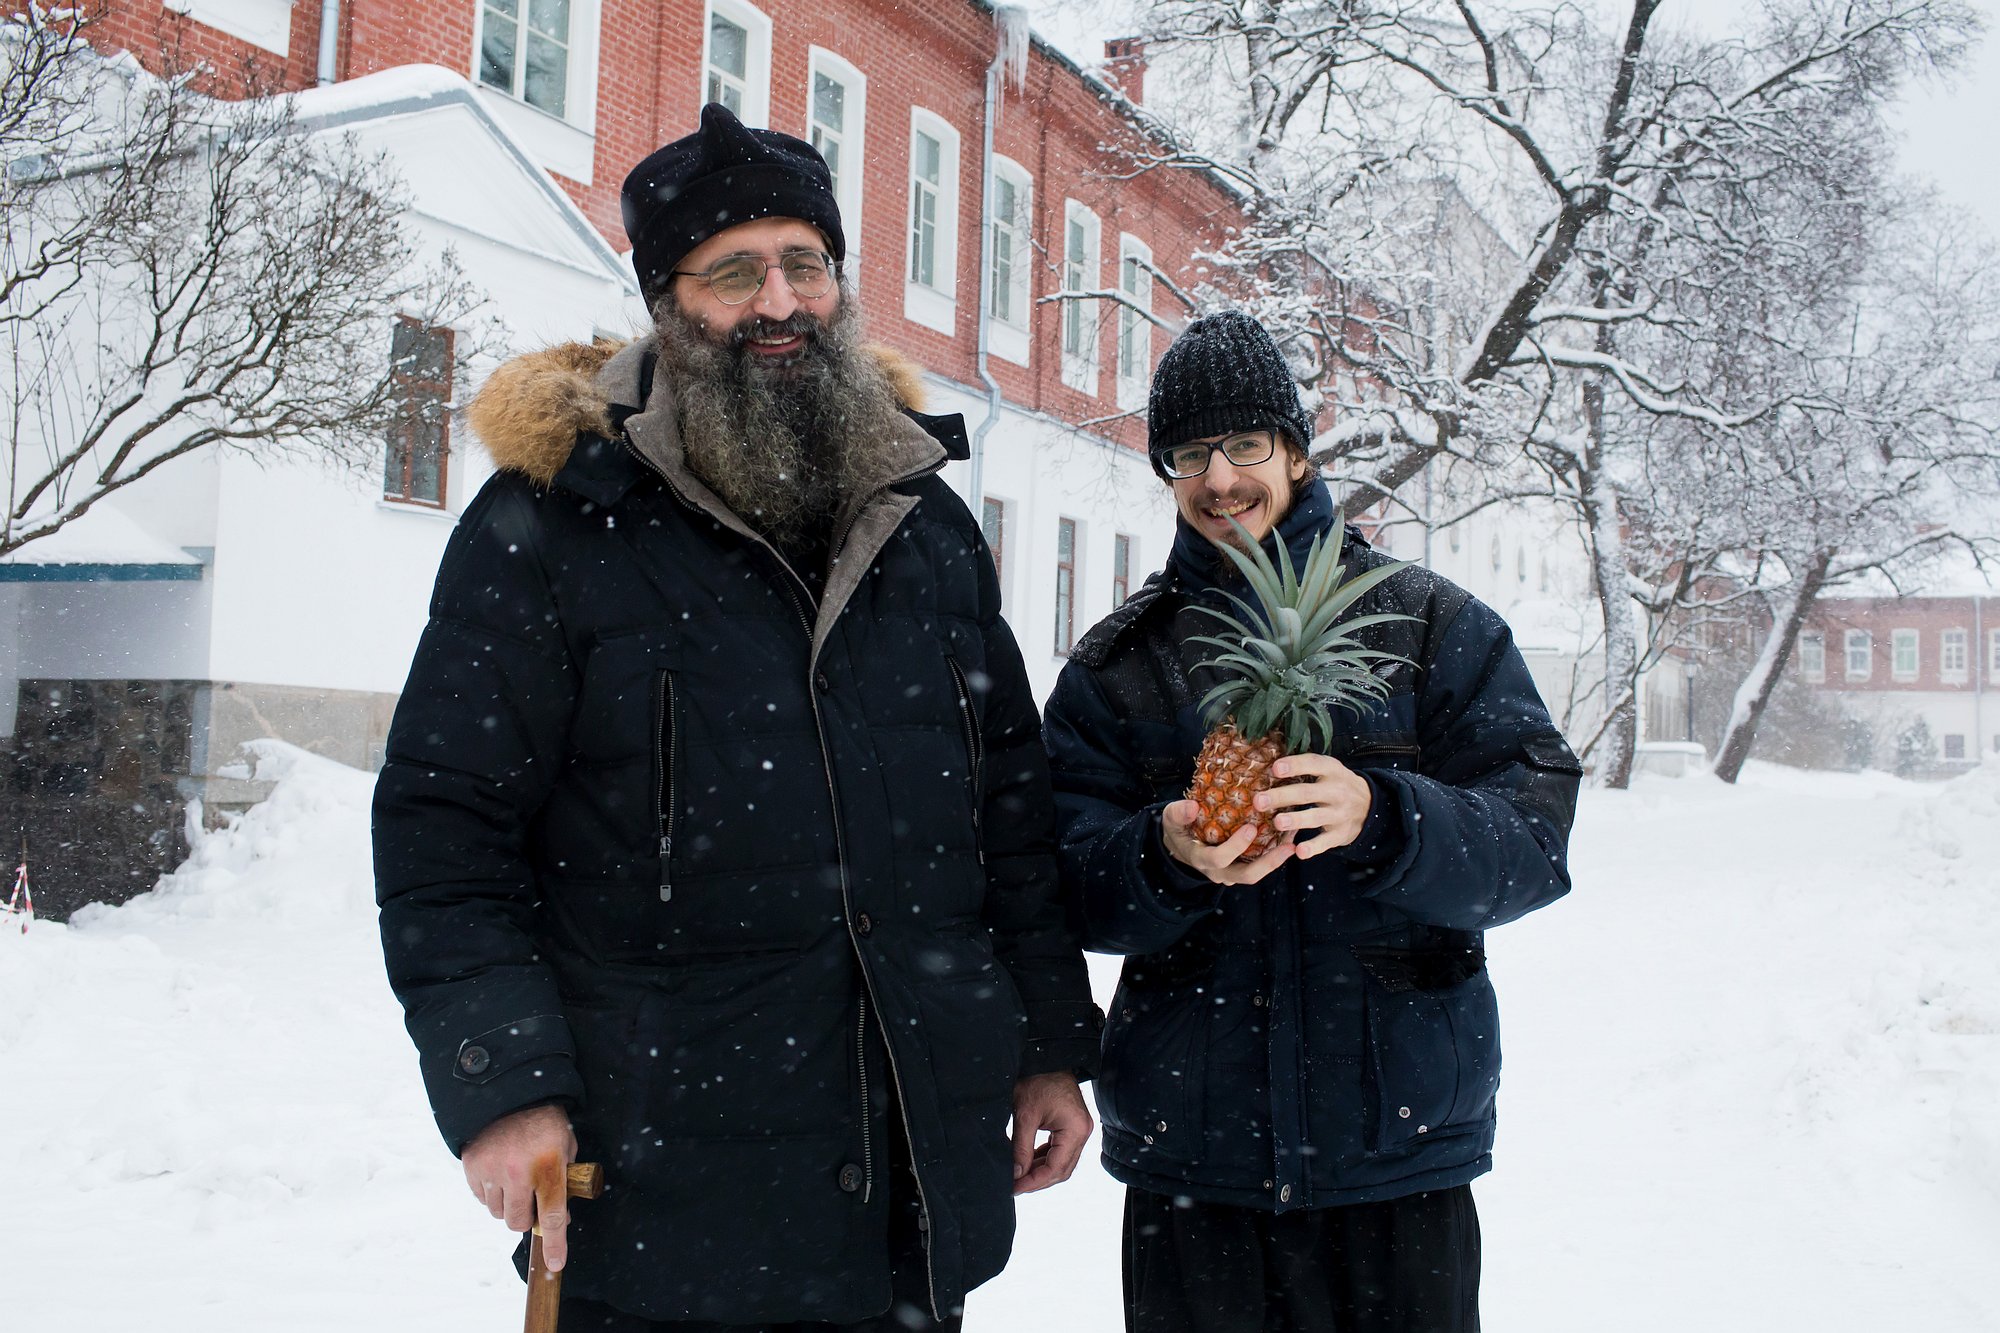 Зима за окном, вокруг много снега, а мы сорвем ананас, и с любовью Игумену поднесем, плоды наших братских трудов…